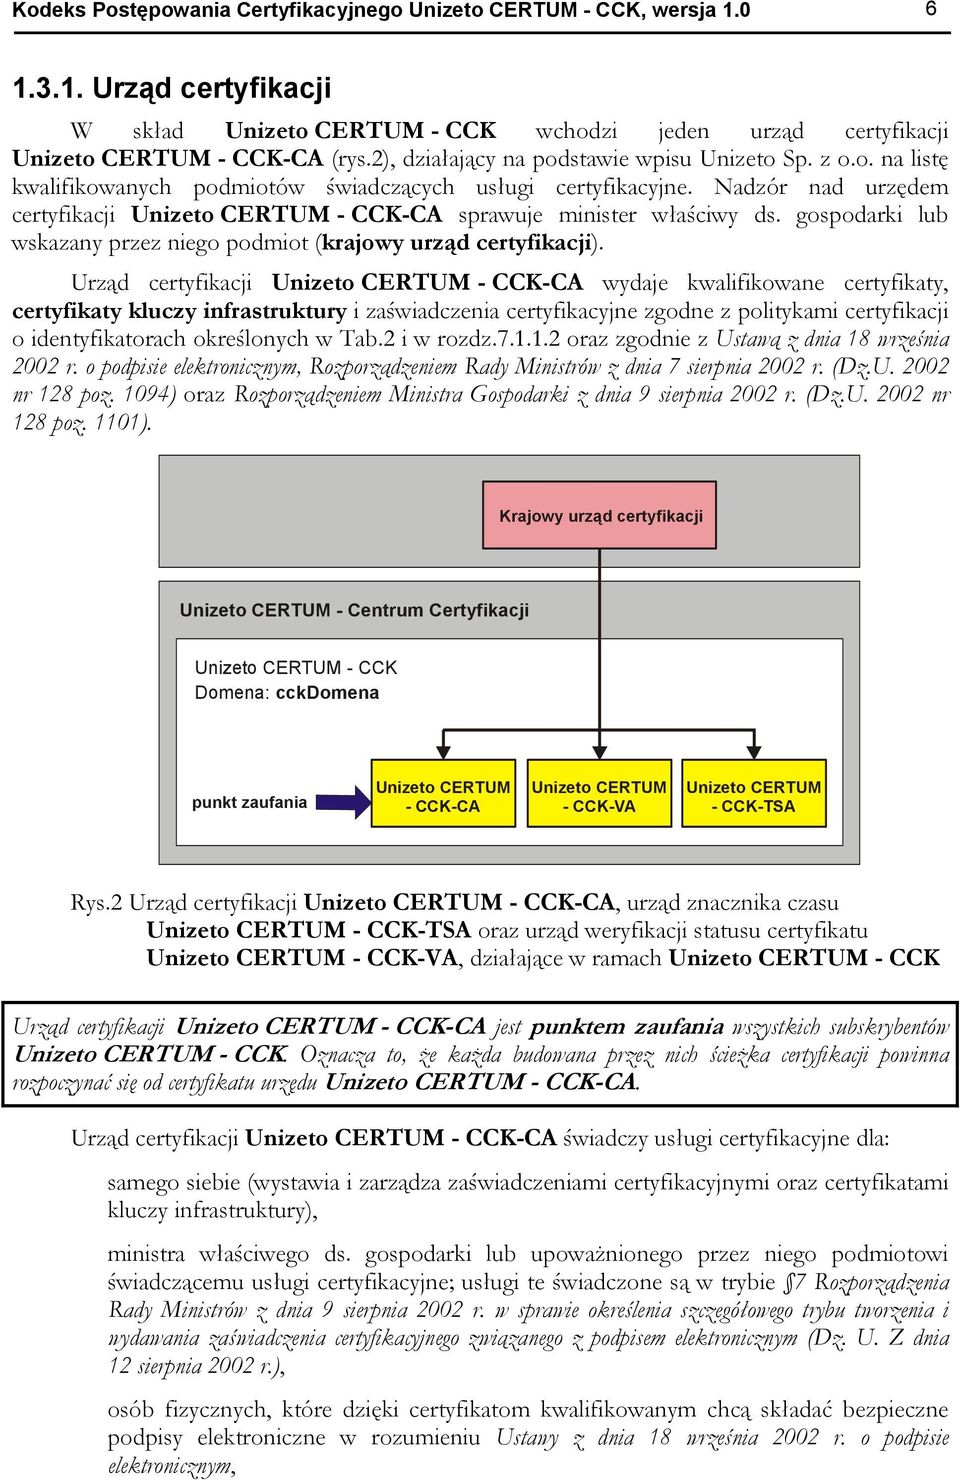 Nadzór nad urzędem certyfikacji Unizeto CERTUM - CCK-CA sprawuje minister właściwy ds. gospodarki lub wskazany przez niego podmiot (krajowy urząd certyfikacji).